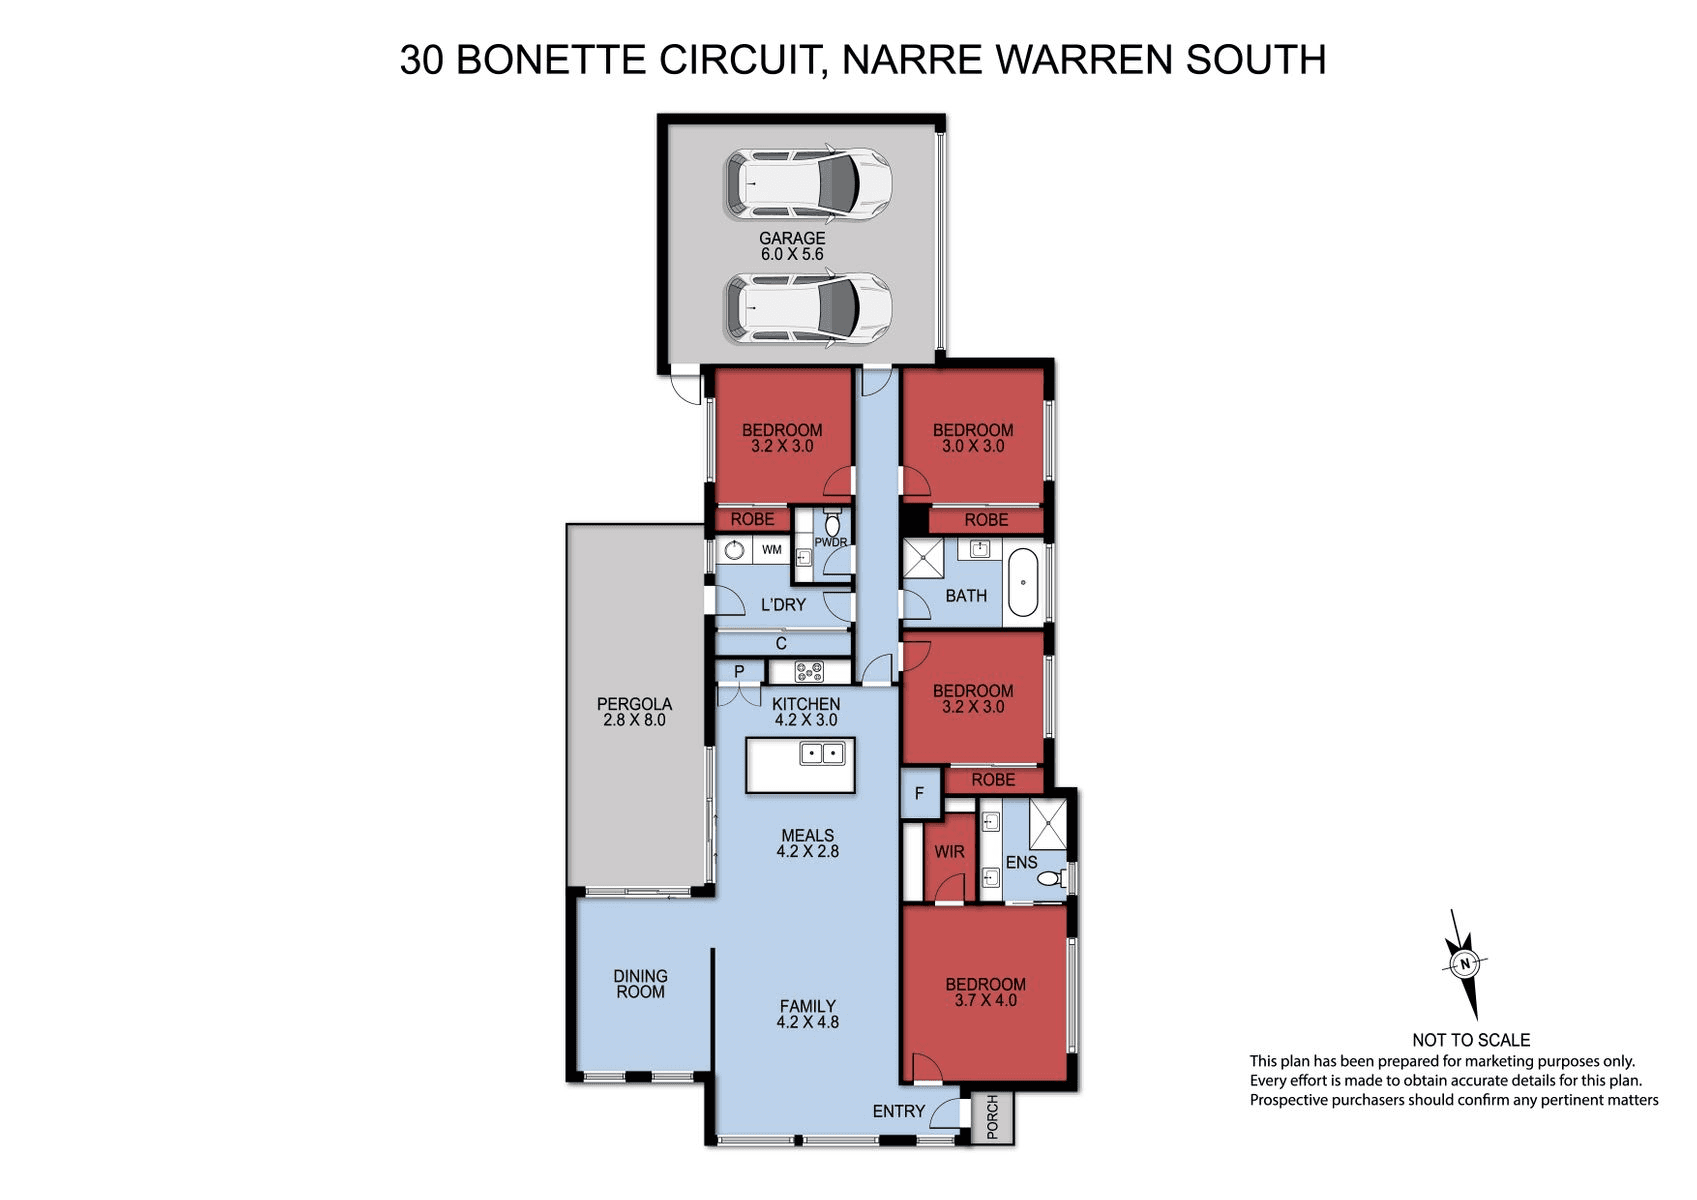 30 Bonette Circuit, NARRE WARREN SOUTH, VIC 3805